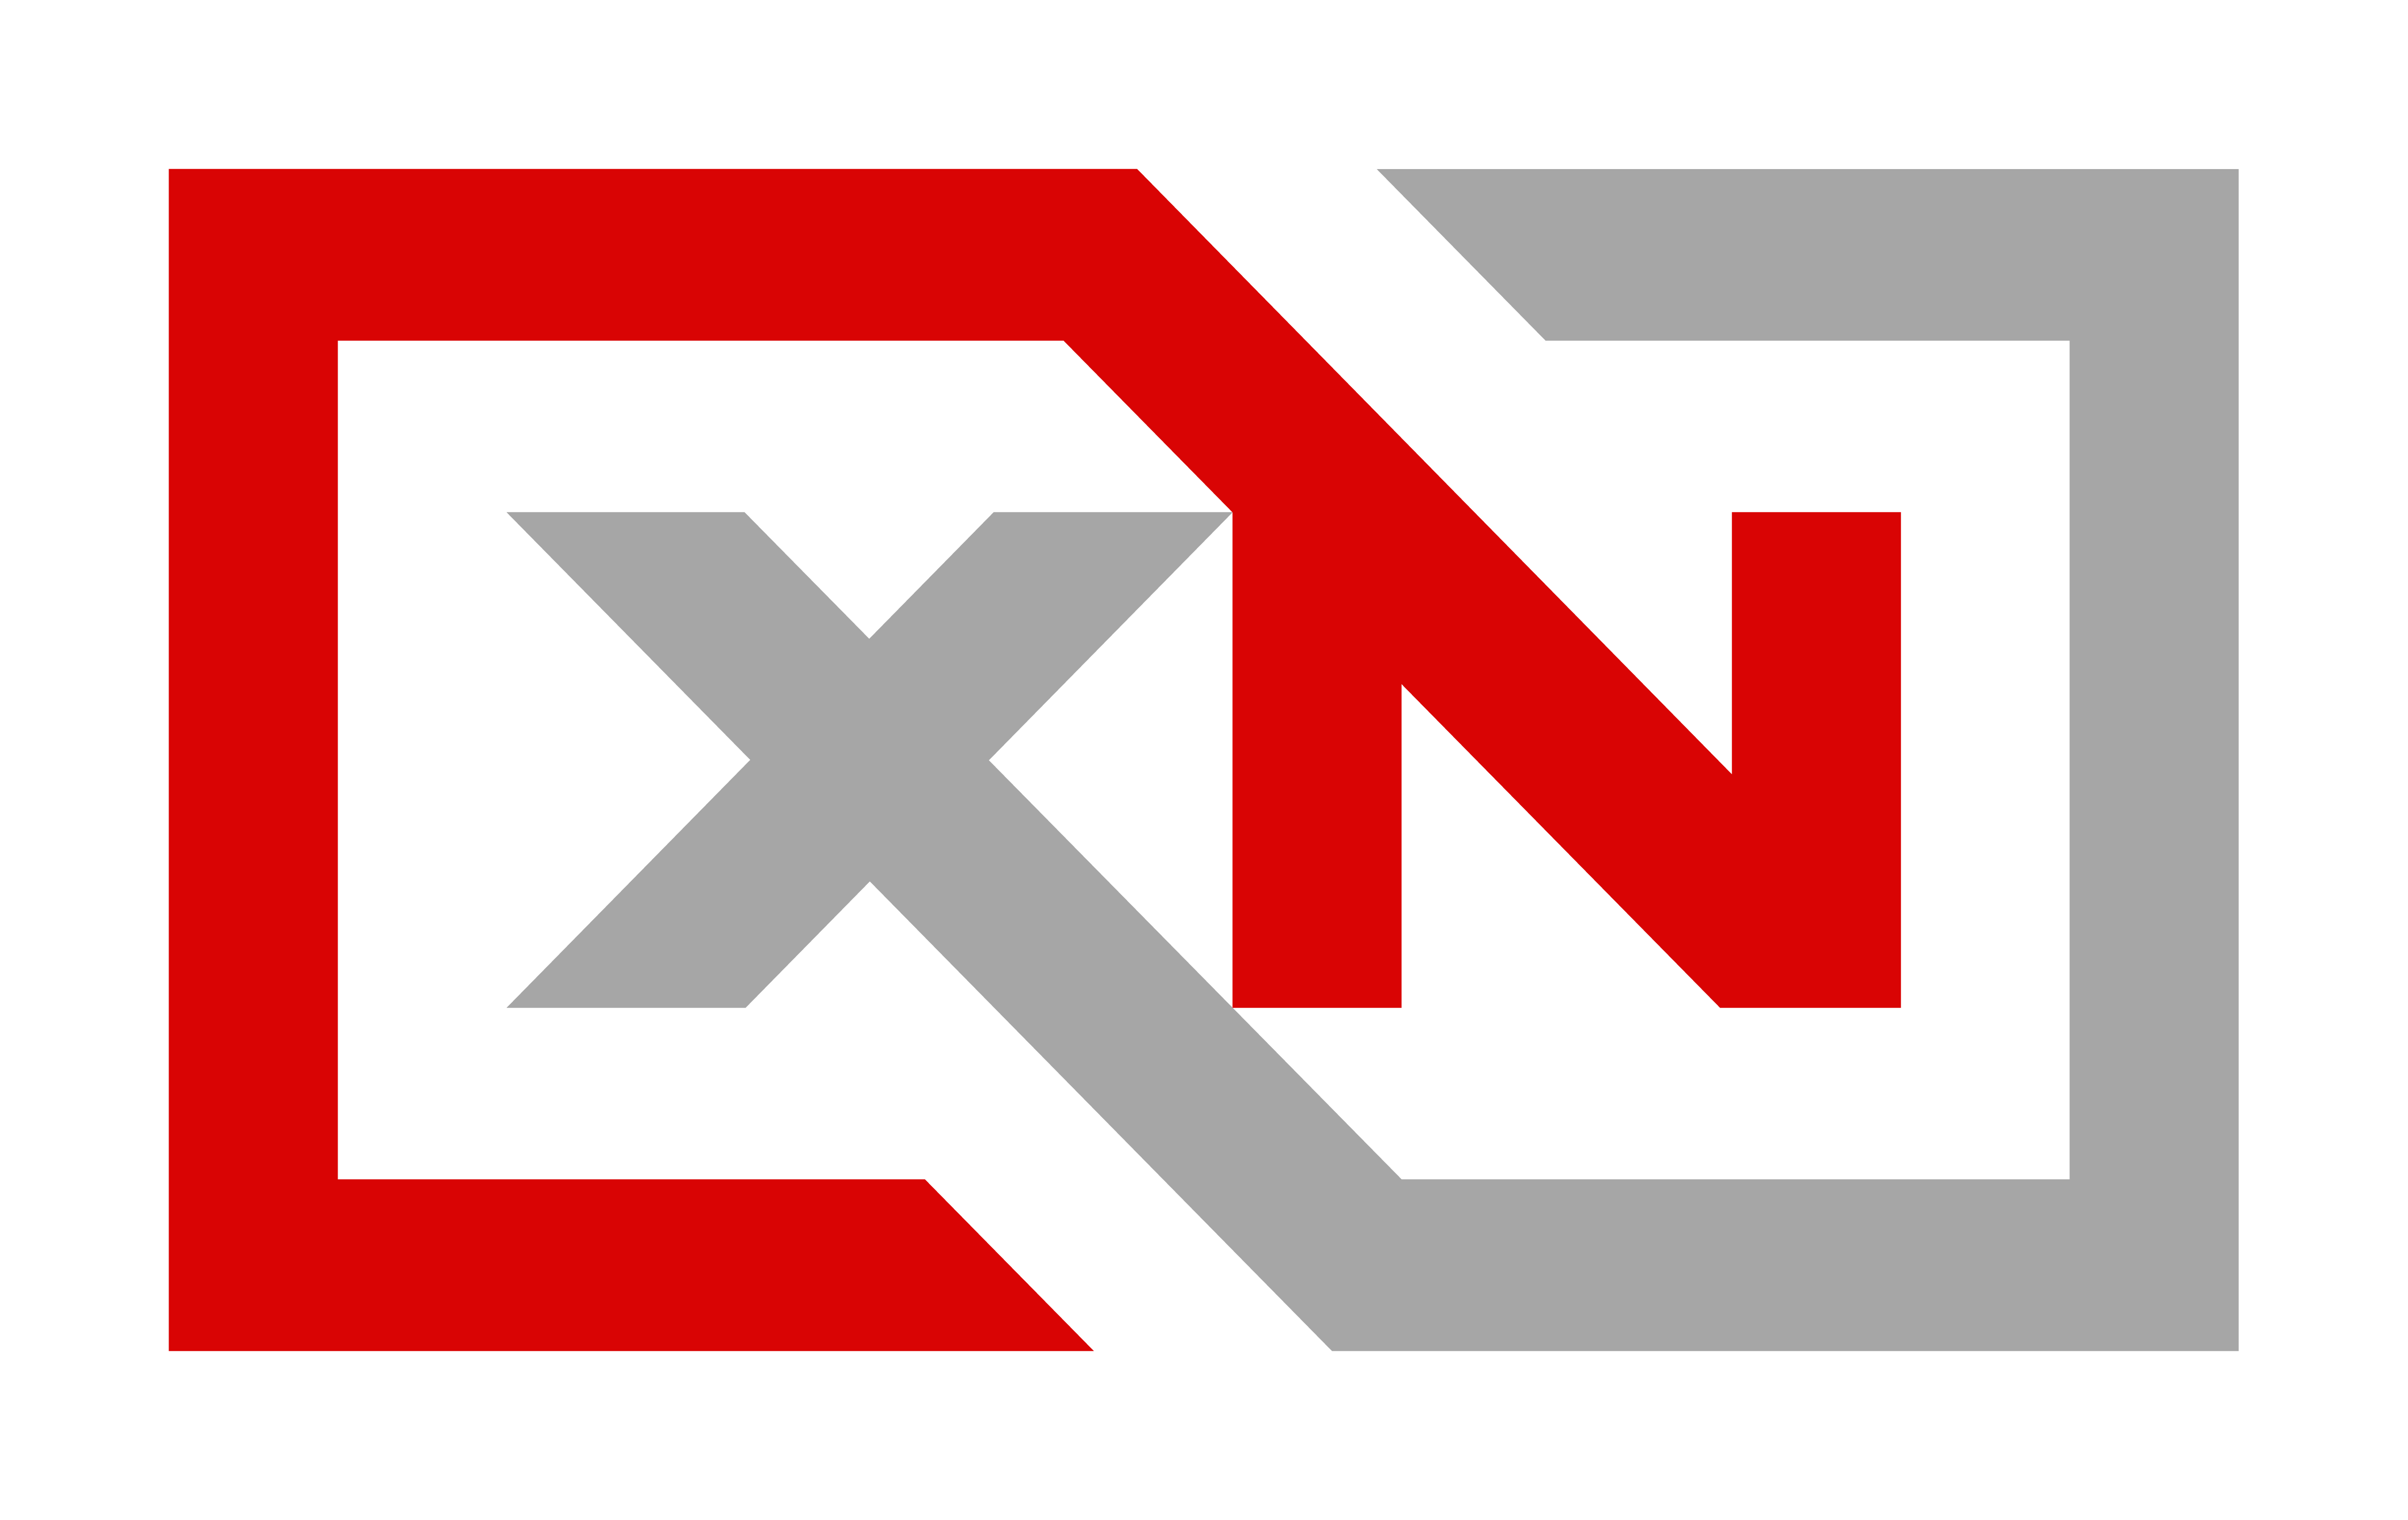 XN Supplements